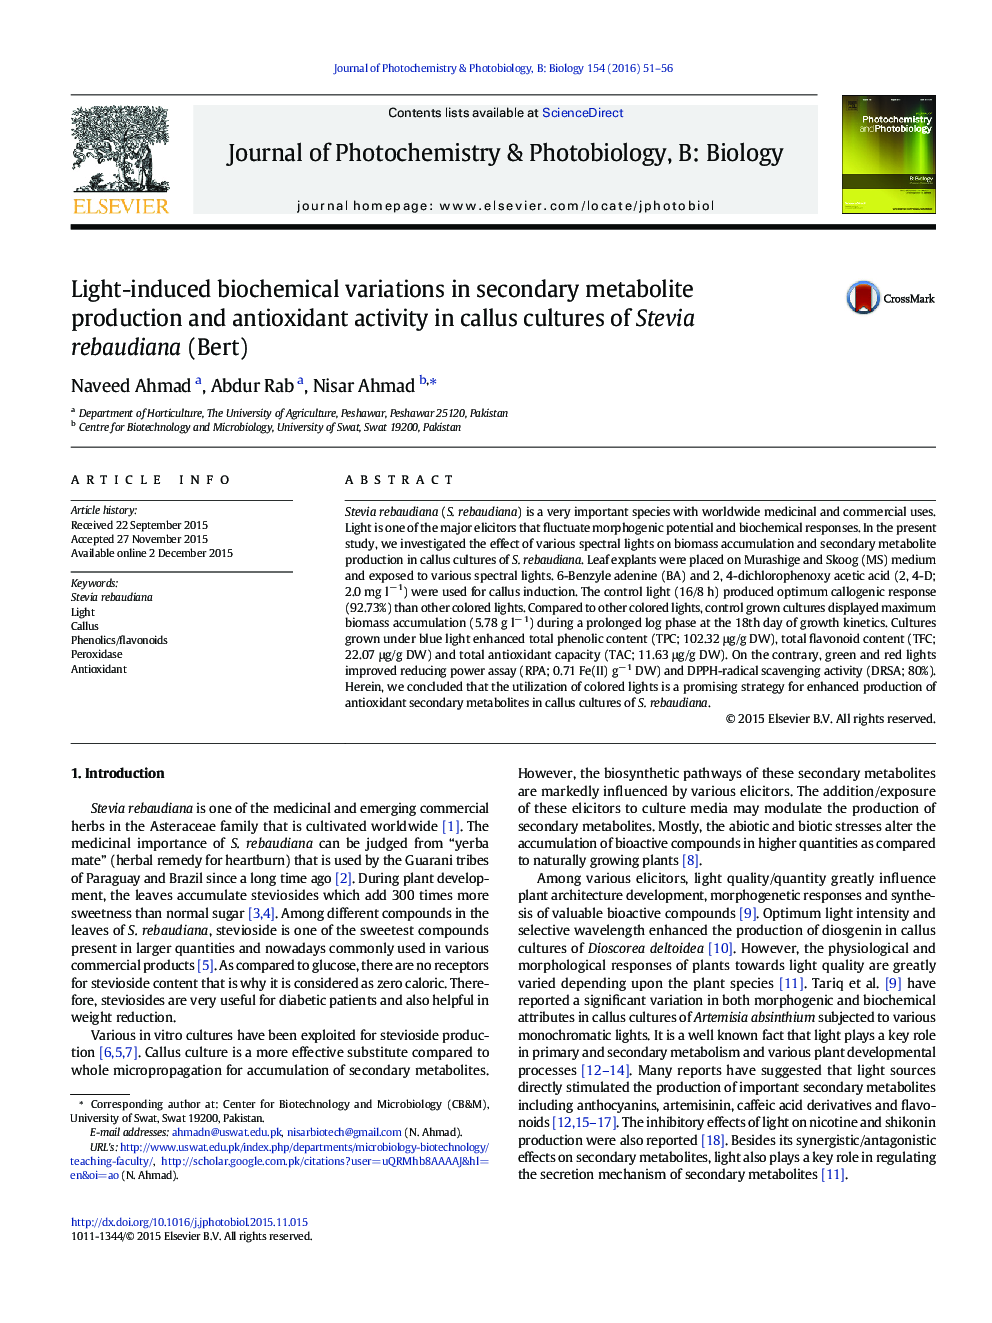 تغییرات بیوشیمیایی ناشی از نور در تولید متابولیت های ثانویه و فعالیت آنتی اکسیدانی در کشت کالوس Stevia rebaudiana (Bert)